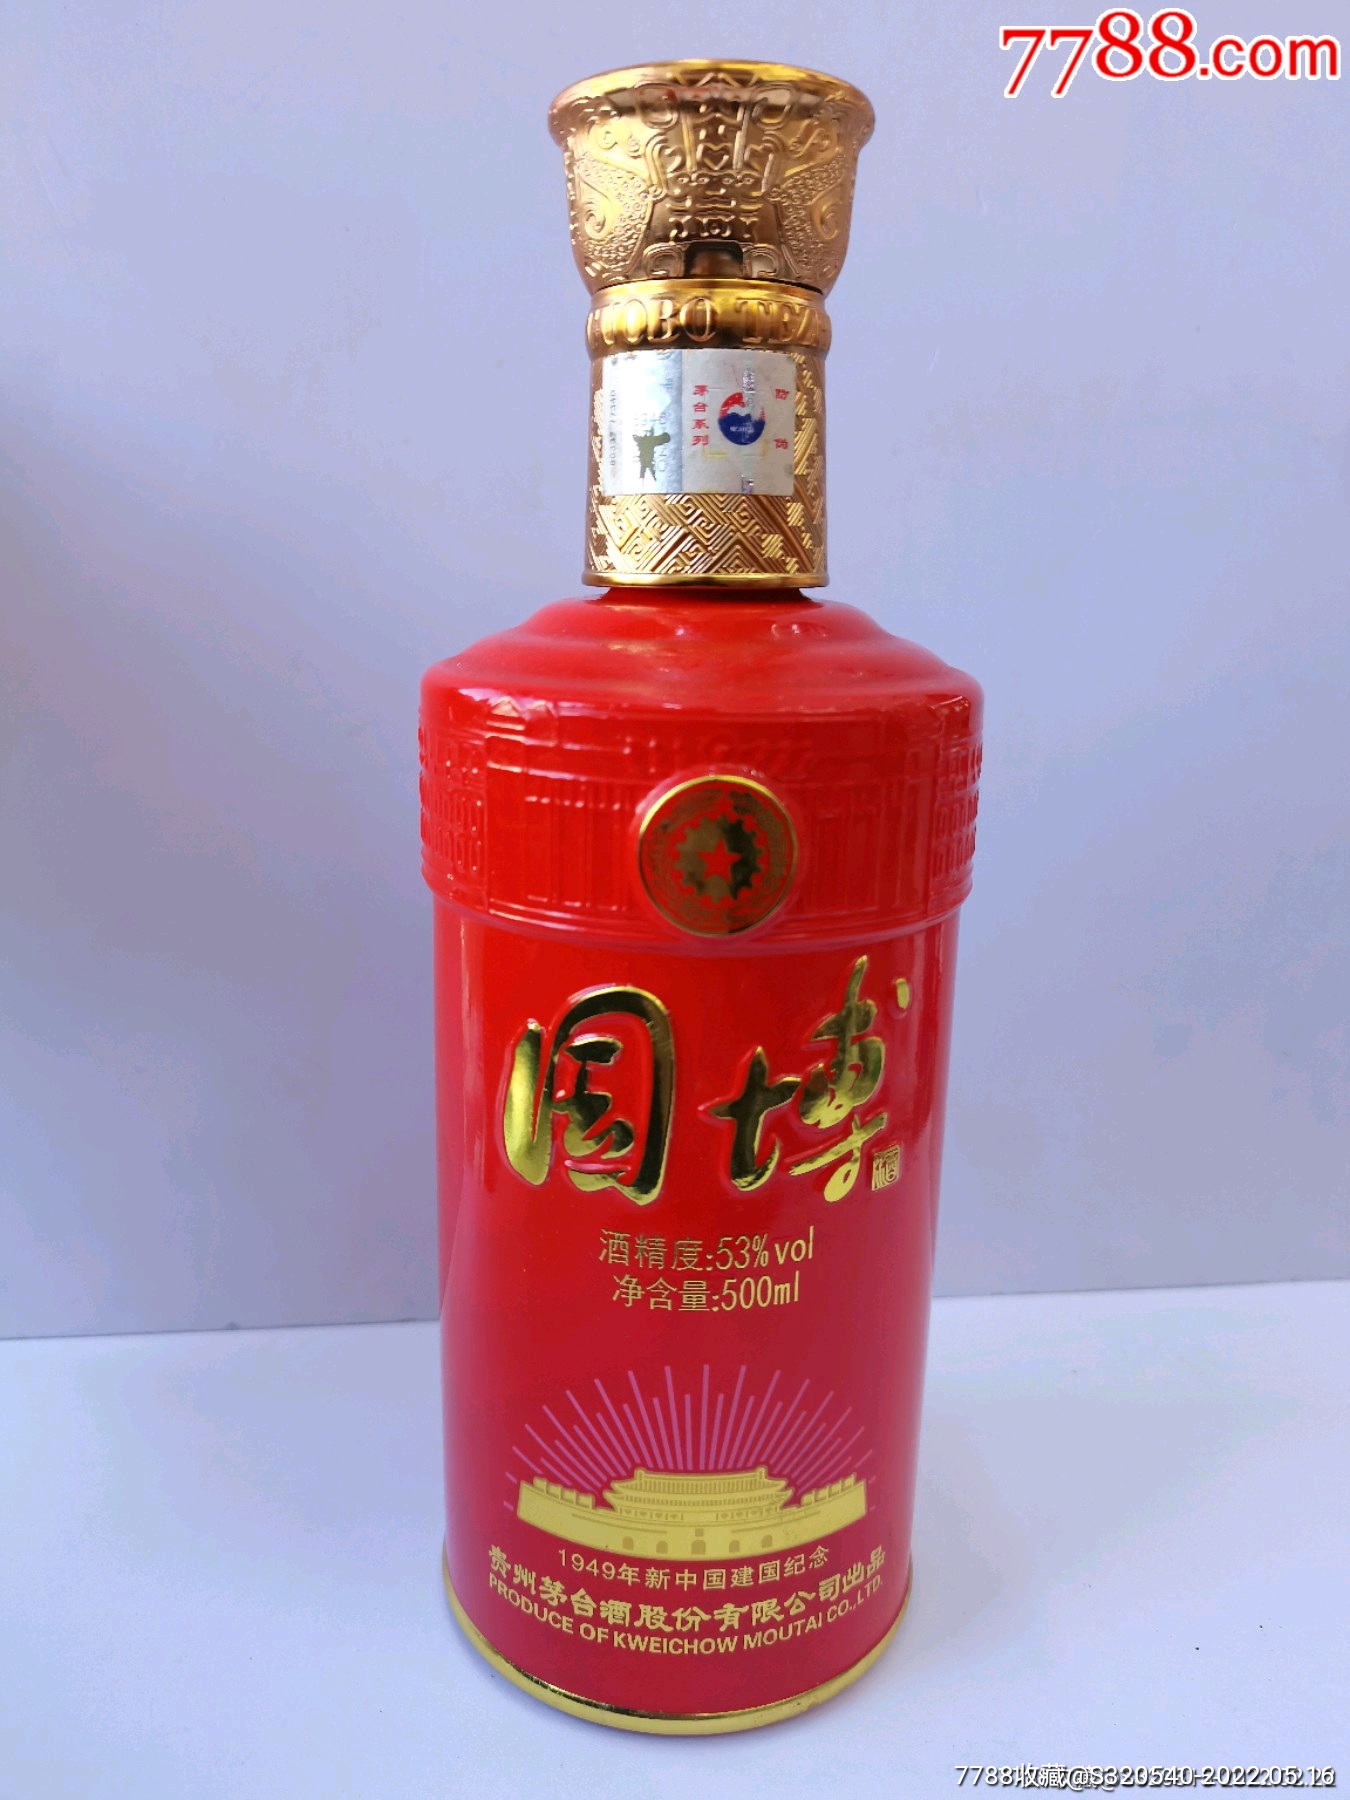 新中国建国纪念中国国家博物馆茅台国博酒酒瓶摆件